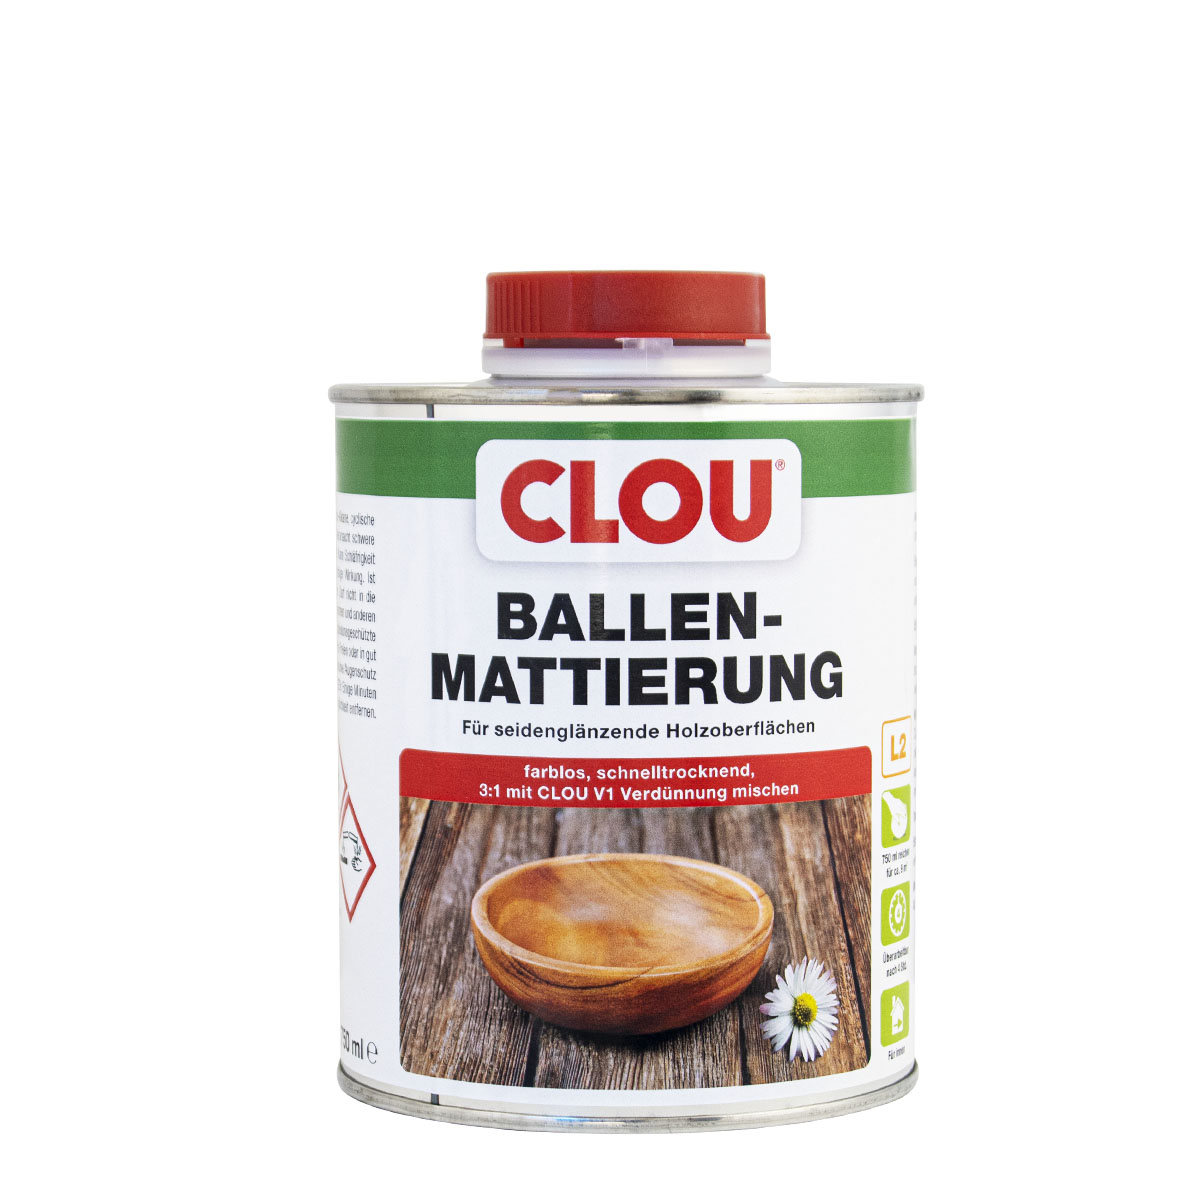 Clou_Ballen-mattierung_750ml_gross